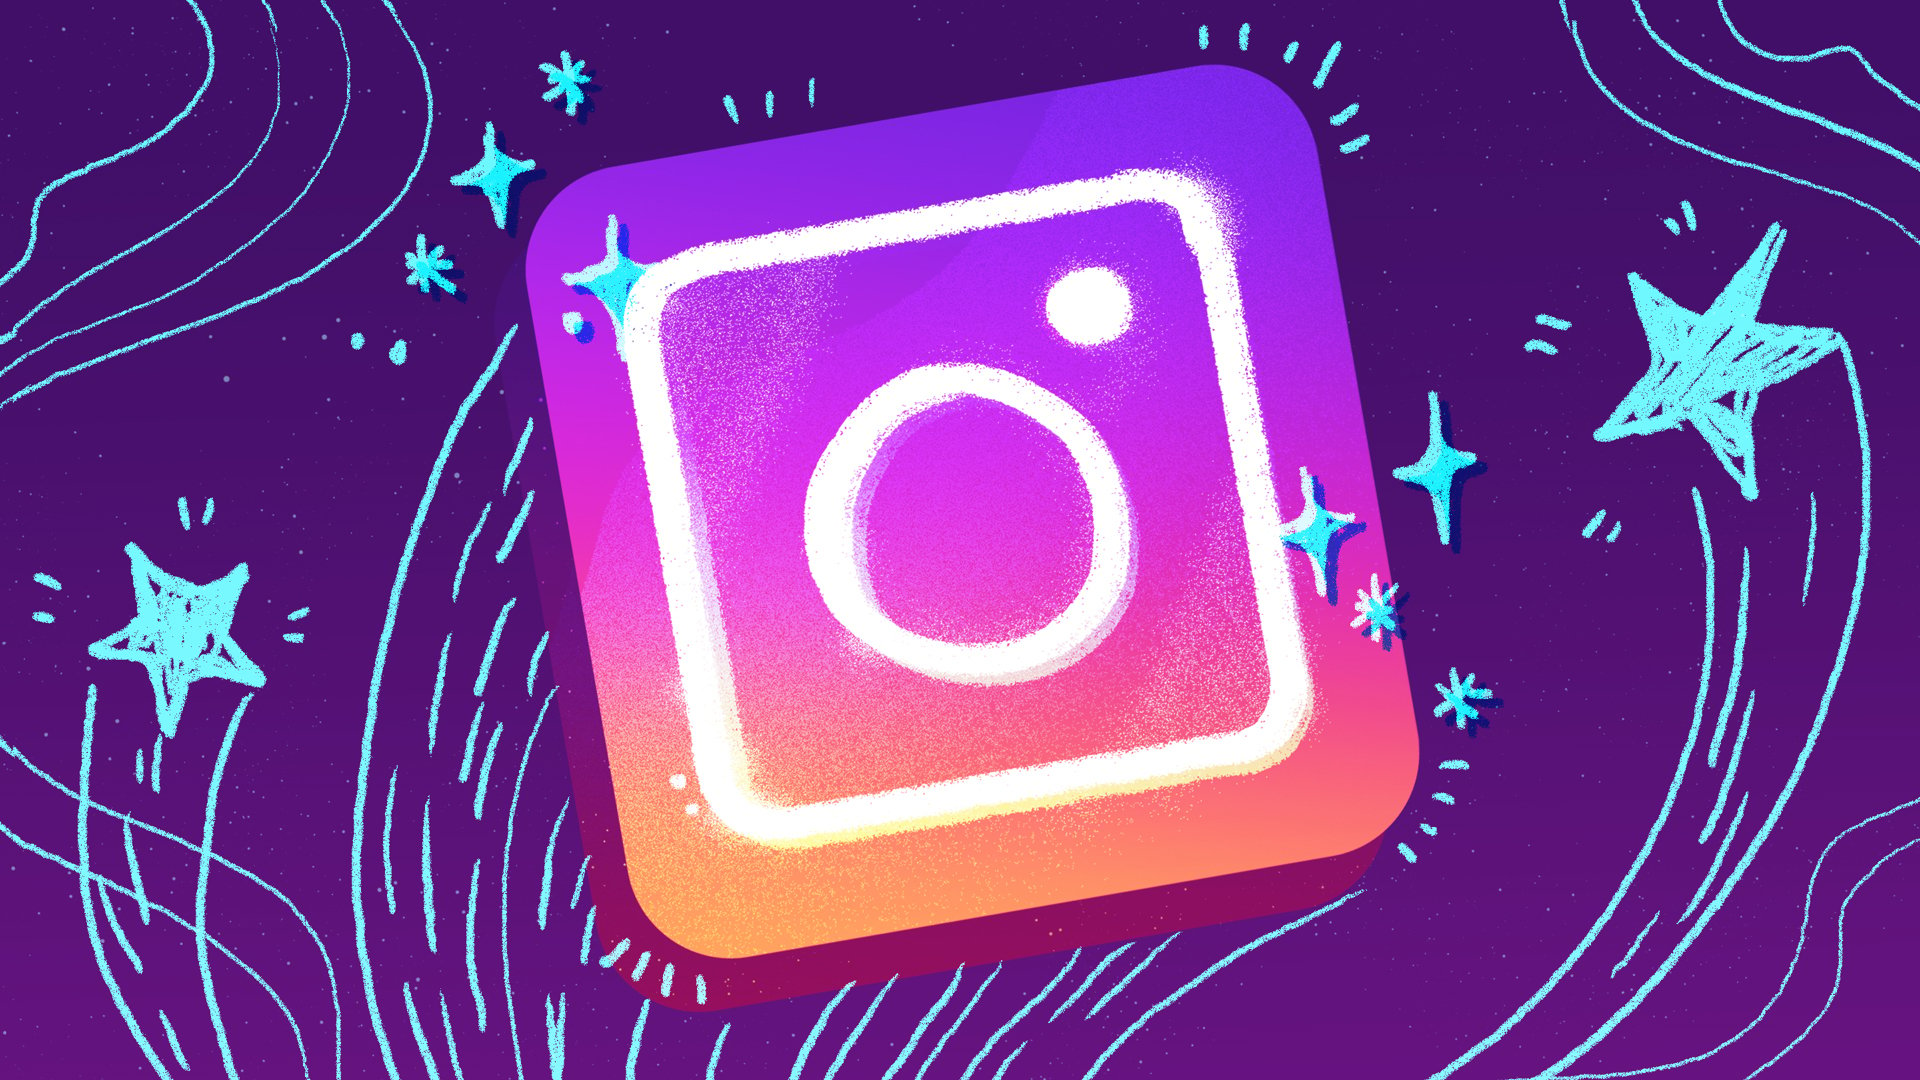 Instagram logo with stars